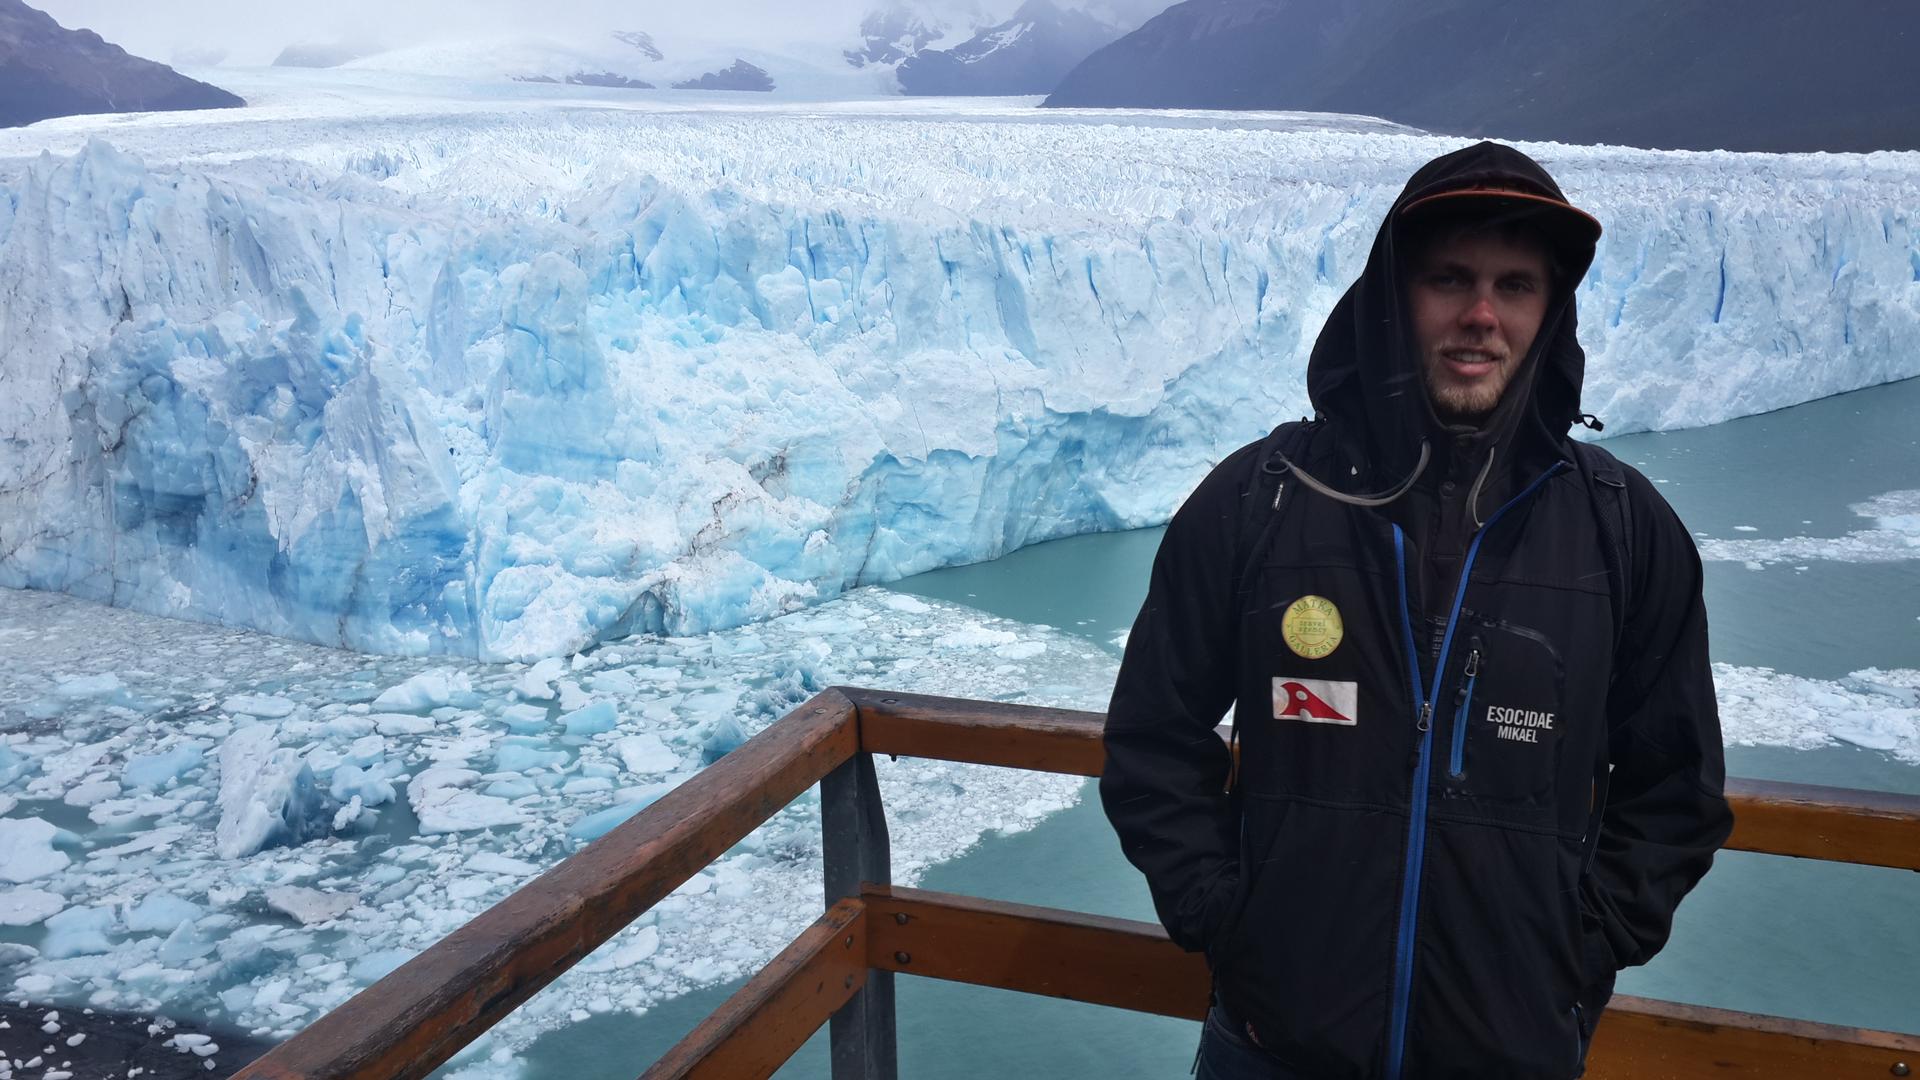 Perito Moreno glacier, El Calafate. The ice was pouring from mountains.